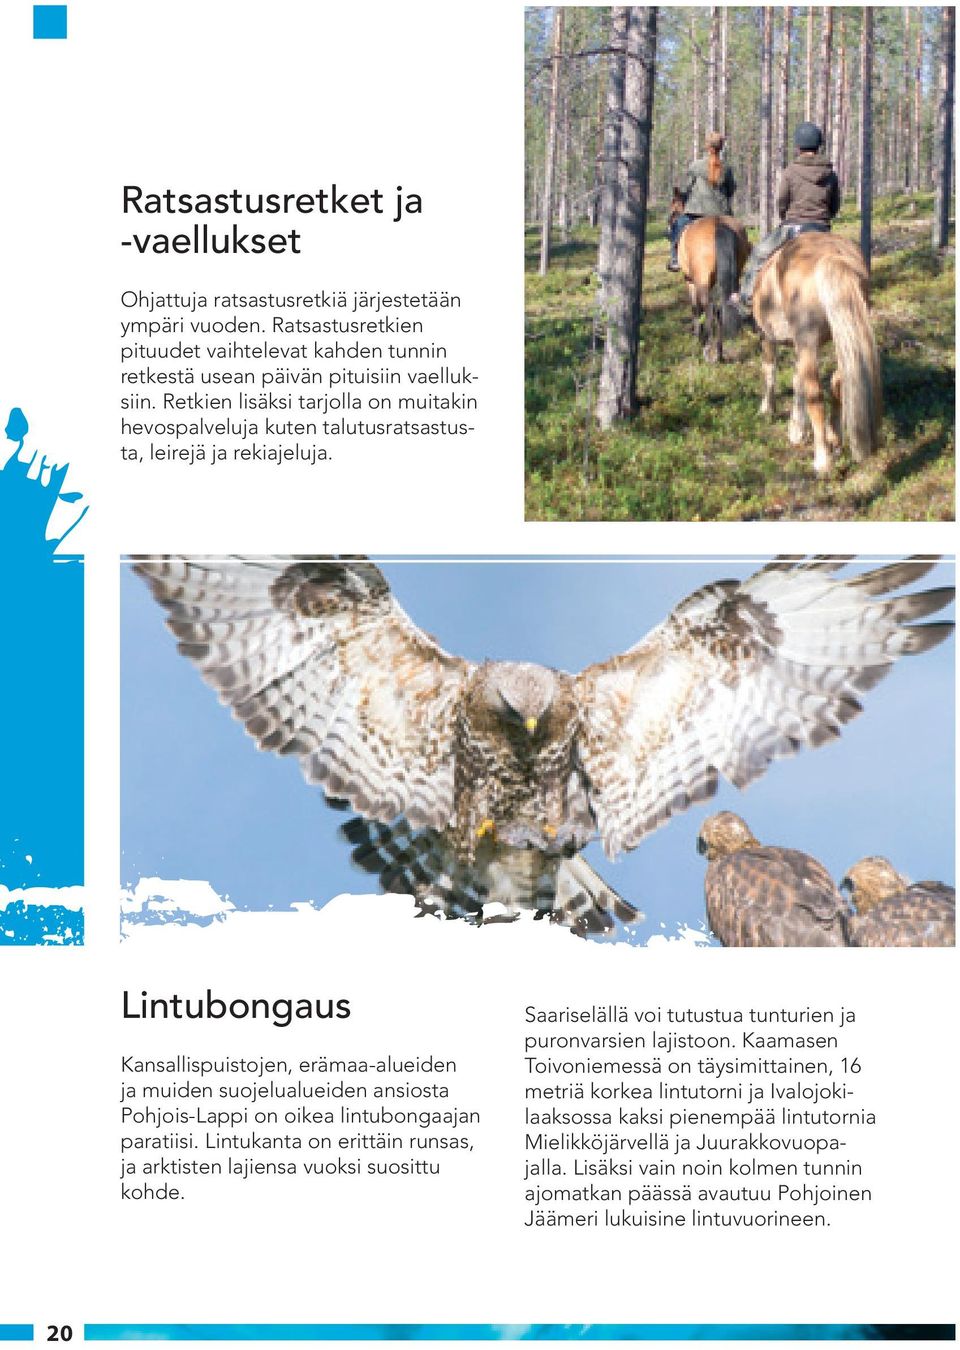 Lintubongaus Kansallispuistojen, erämaa-alueiden ja muiden suojelualueiden ansiosta Pohjois-Lappi on oikea lintubongaajan paratiisi.